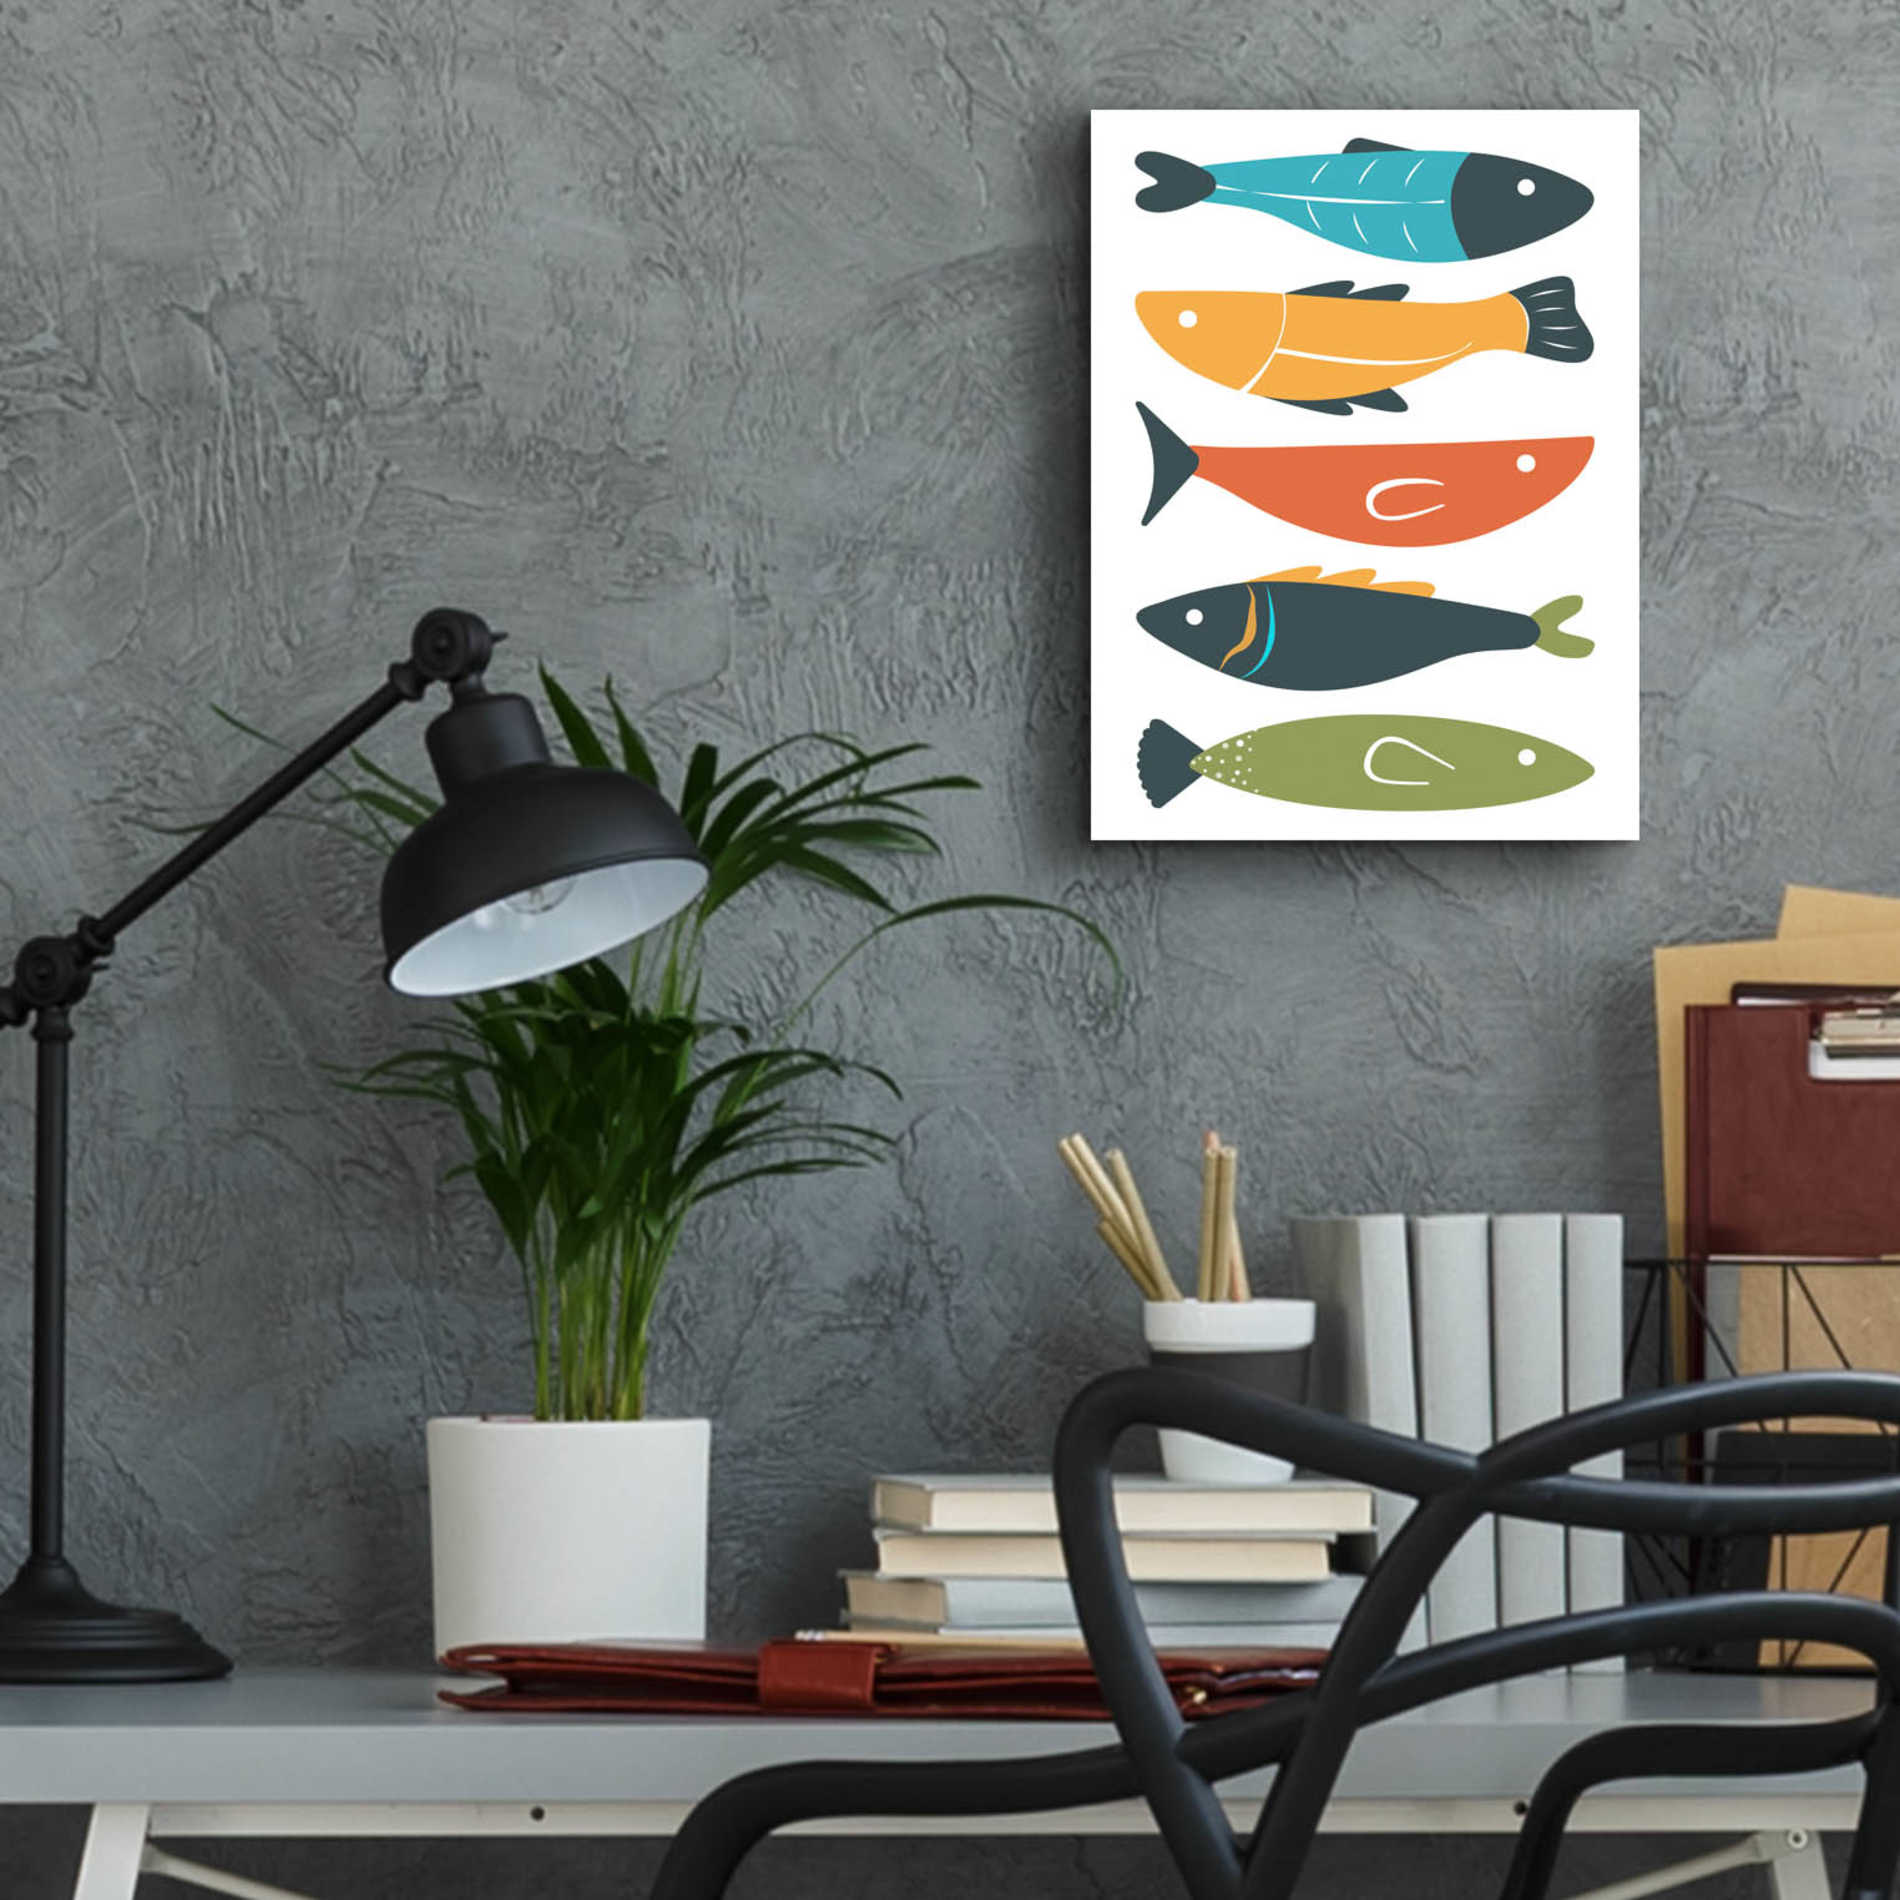 Epic Art 'Playful Fish' by Ayse, Acrylic Glass Wall Art,12x16